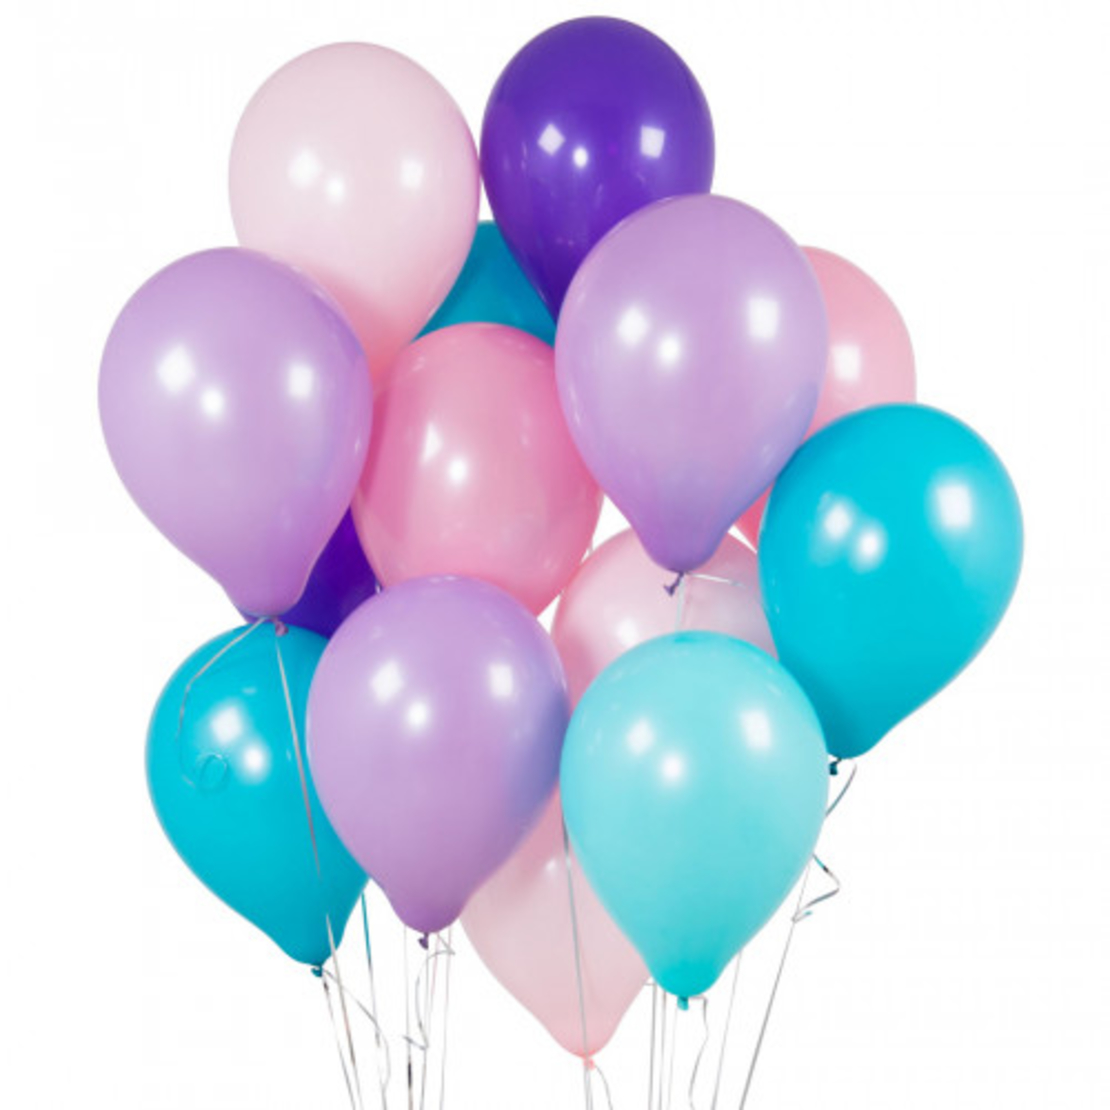 Сине розовые шары. Гелиевые шары. Нежные воздушные шары. Разноцветные шарики воздушные. Воздушные шары гелиевые.